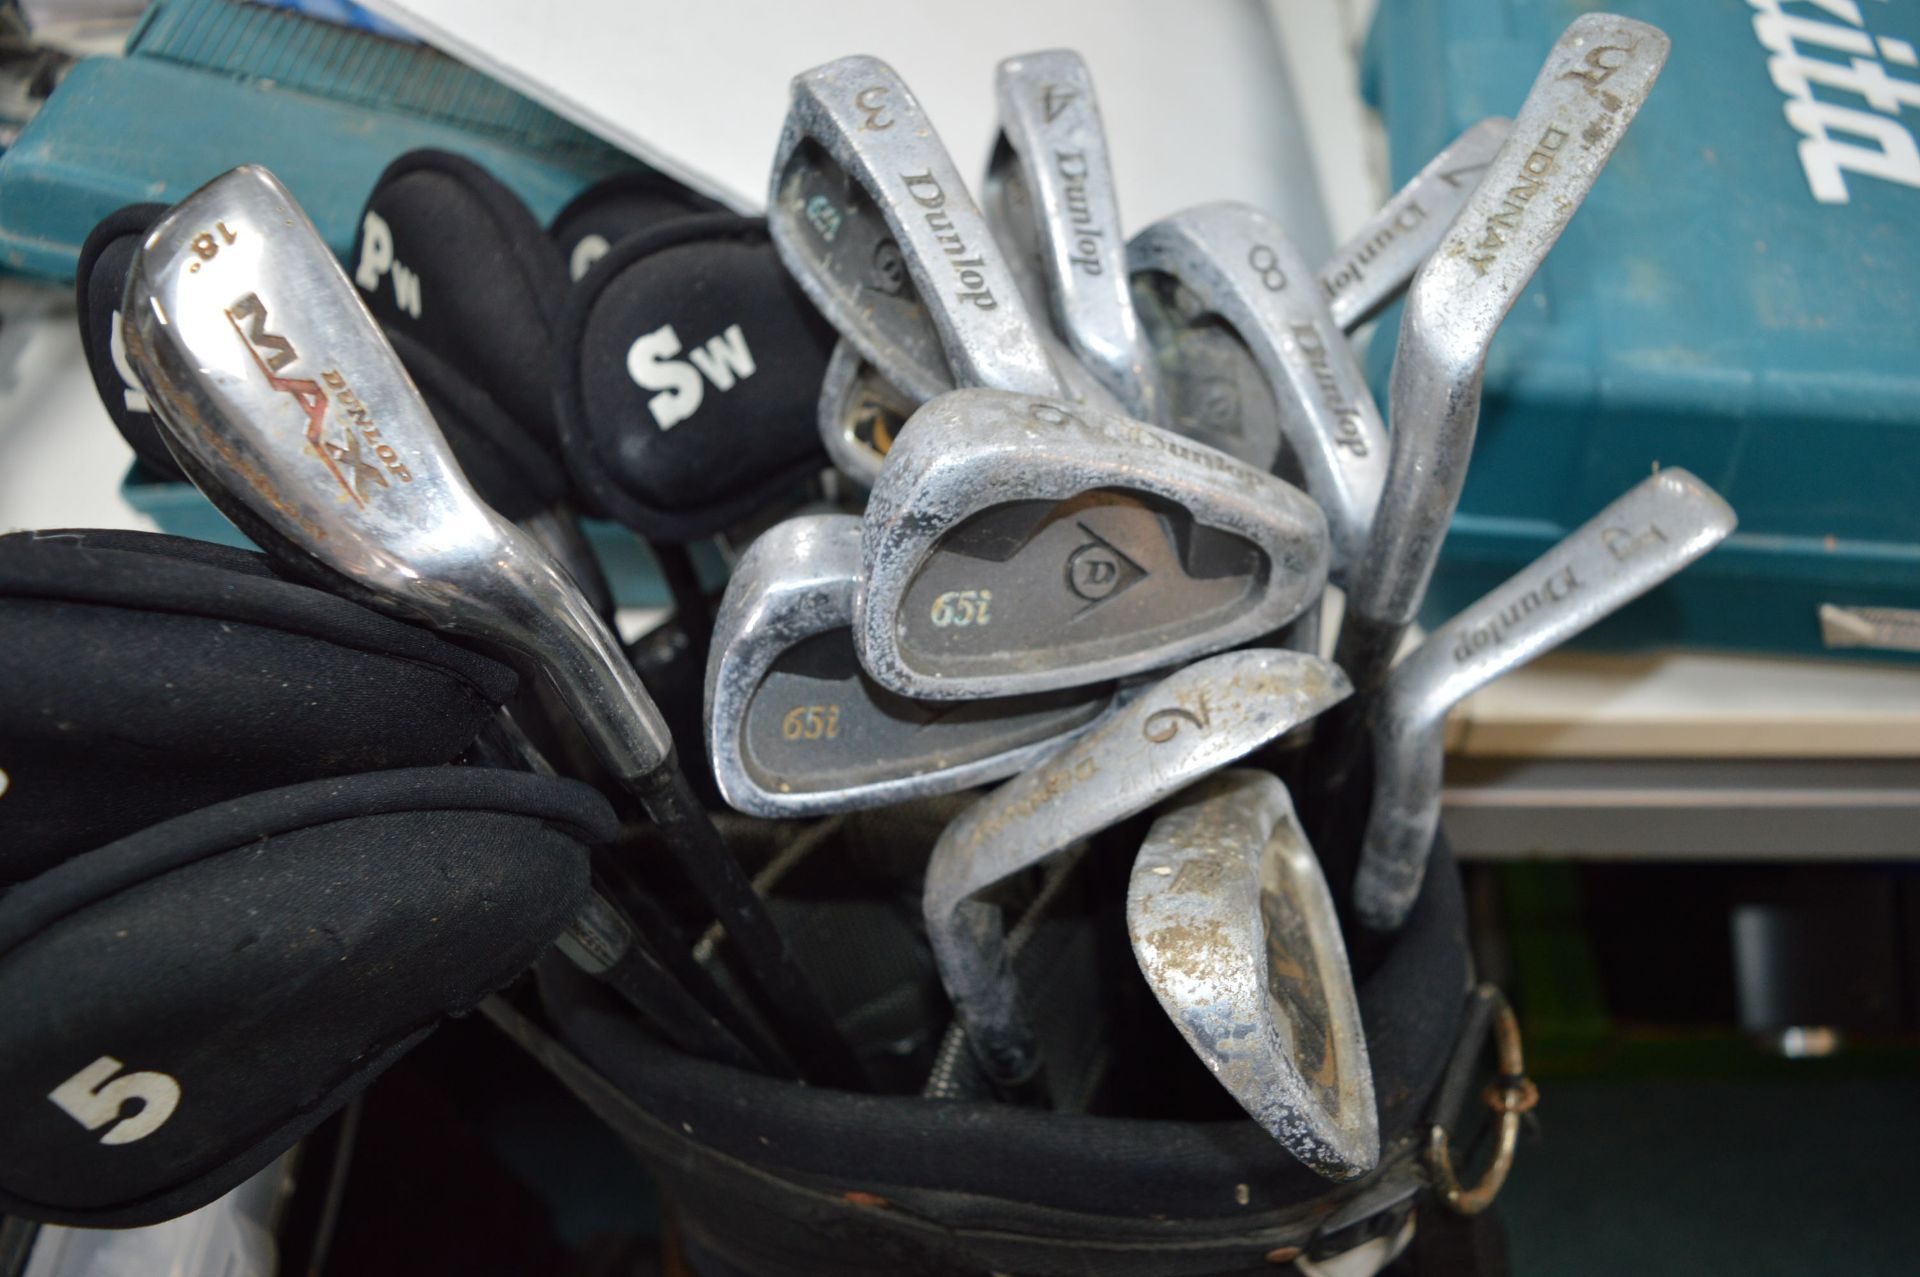 Dunlop Golf Bag and Assorted Golf Clubs - Bild 2 aus 2